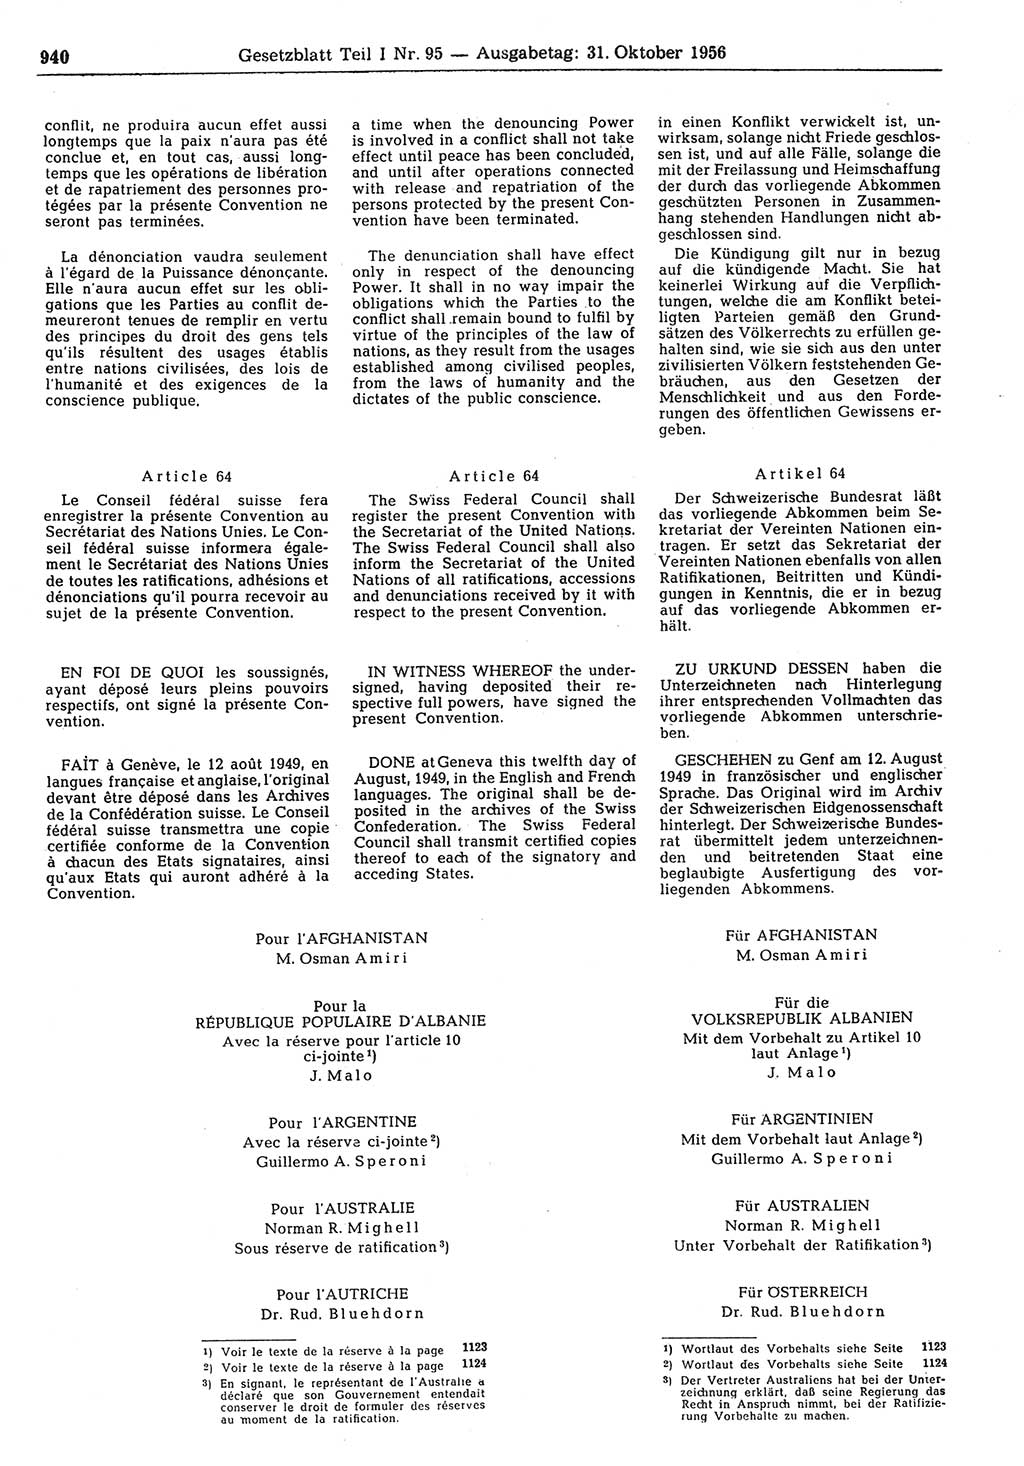 Gesetzblatt (GBl.) der Deutschen Demokratischen Republik (DDR) Teil Ⅰ 1956, Seite 940 (GBl. DDR Ⅰ 1956, S. 940)